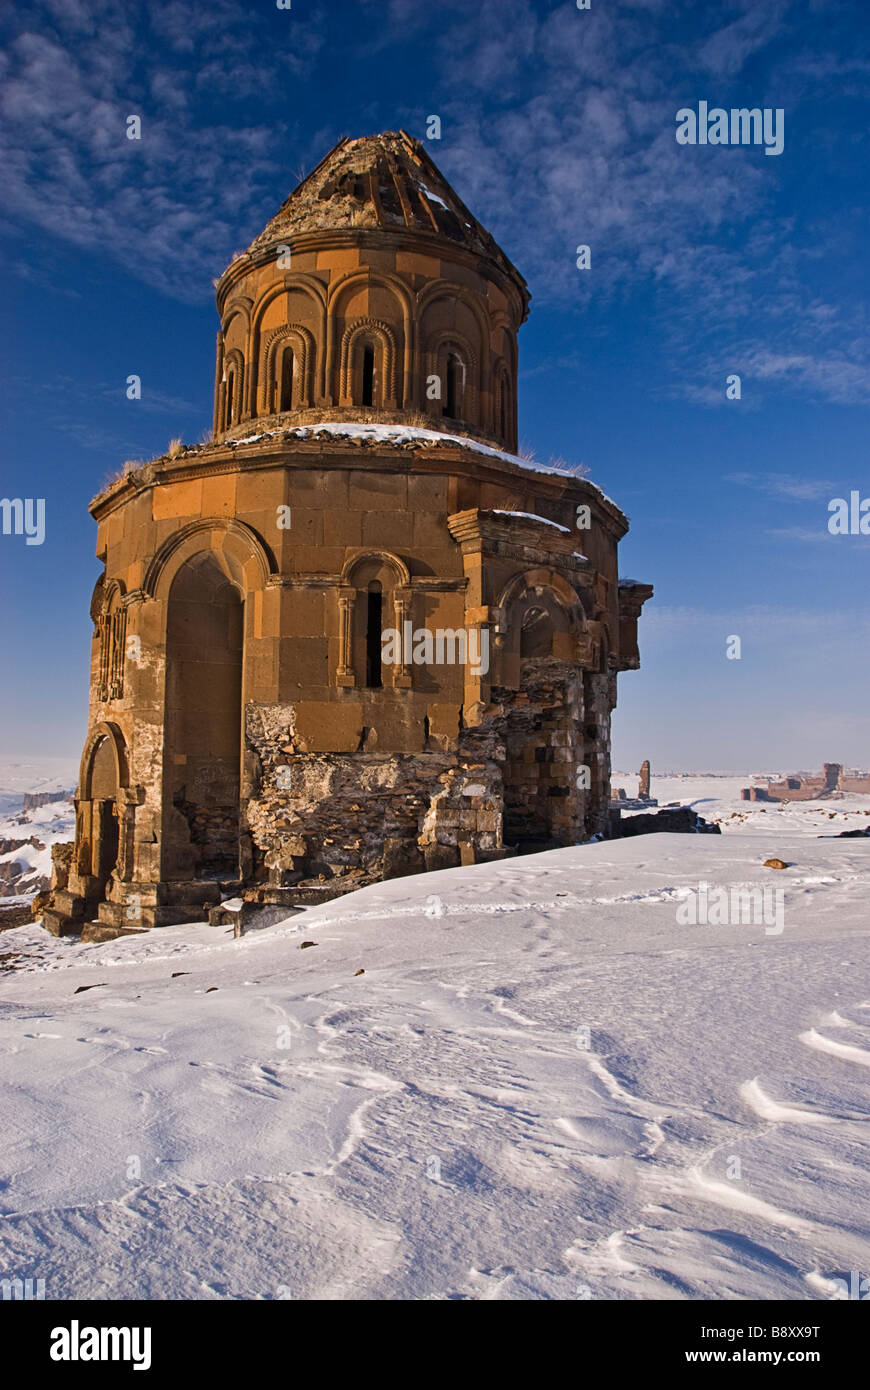 La antigua iglesia armenia y paisaje invernal, Ani, Turquía, Asia Foto de stock